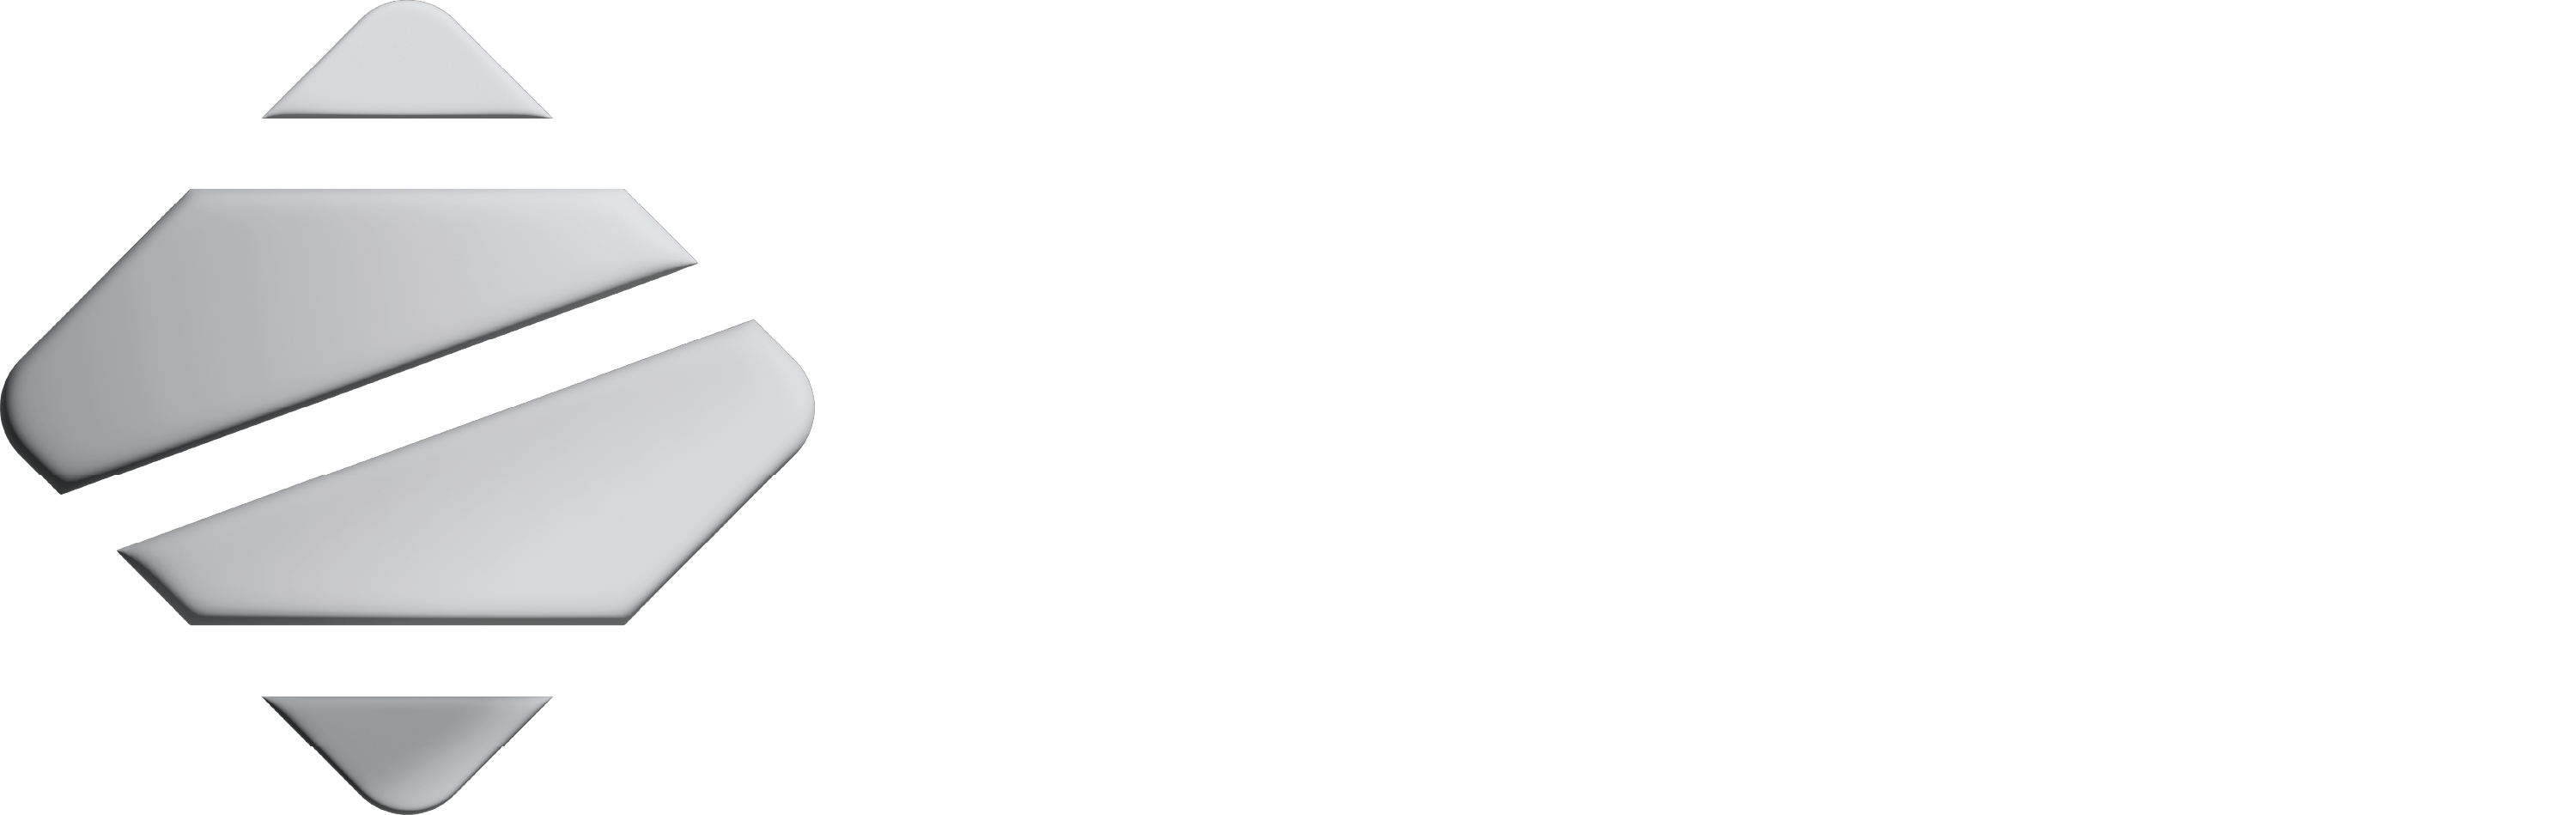 Zinia - Cybersecurity Backups